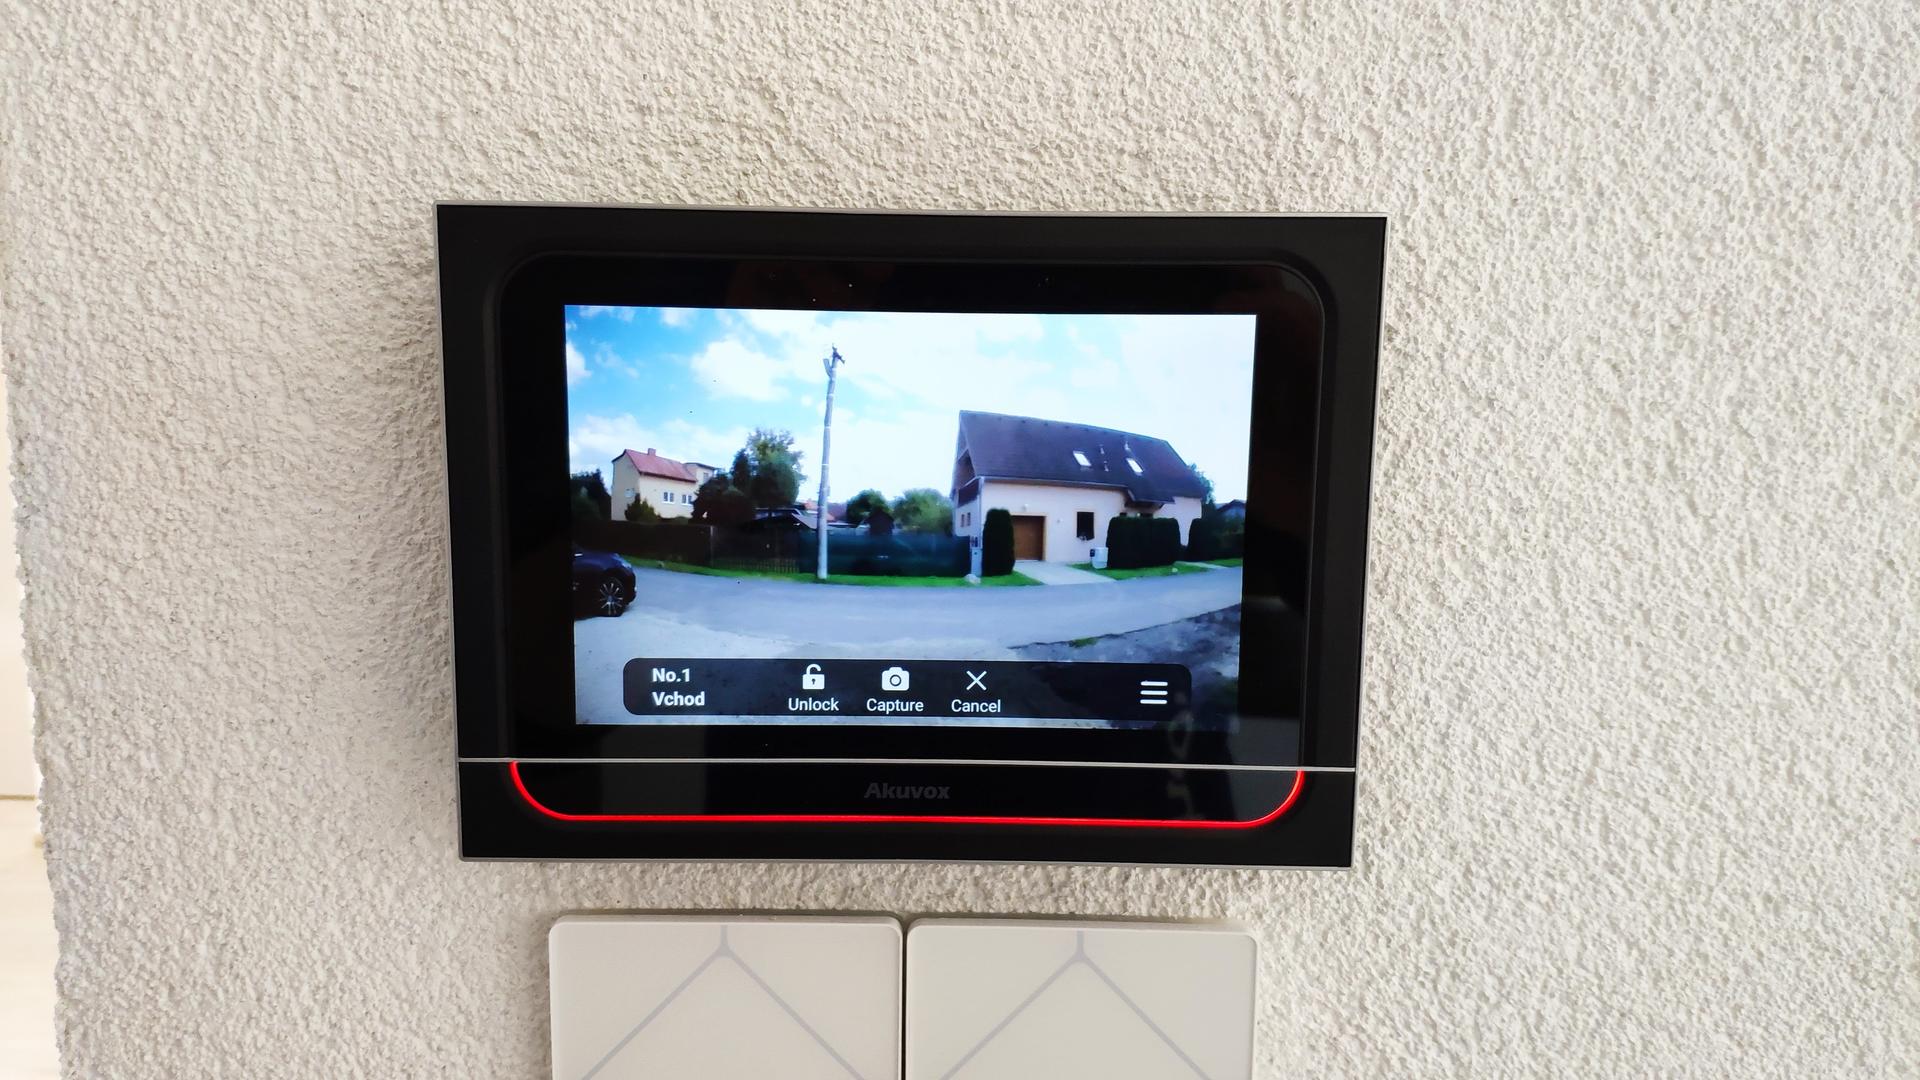 Akuvox - naše realizácie - Monitor Akuvox X933 prepojený s vonkajšou jednotkou pre videokomunikáciu. Monitor tiež dokáže integrovať aplikáciu TapHome, kamerový systém či bezpečnostný systém, to znamená všetko na jednom mieste. Inštalovaný v rodinnom dome.